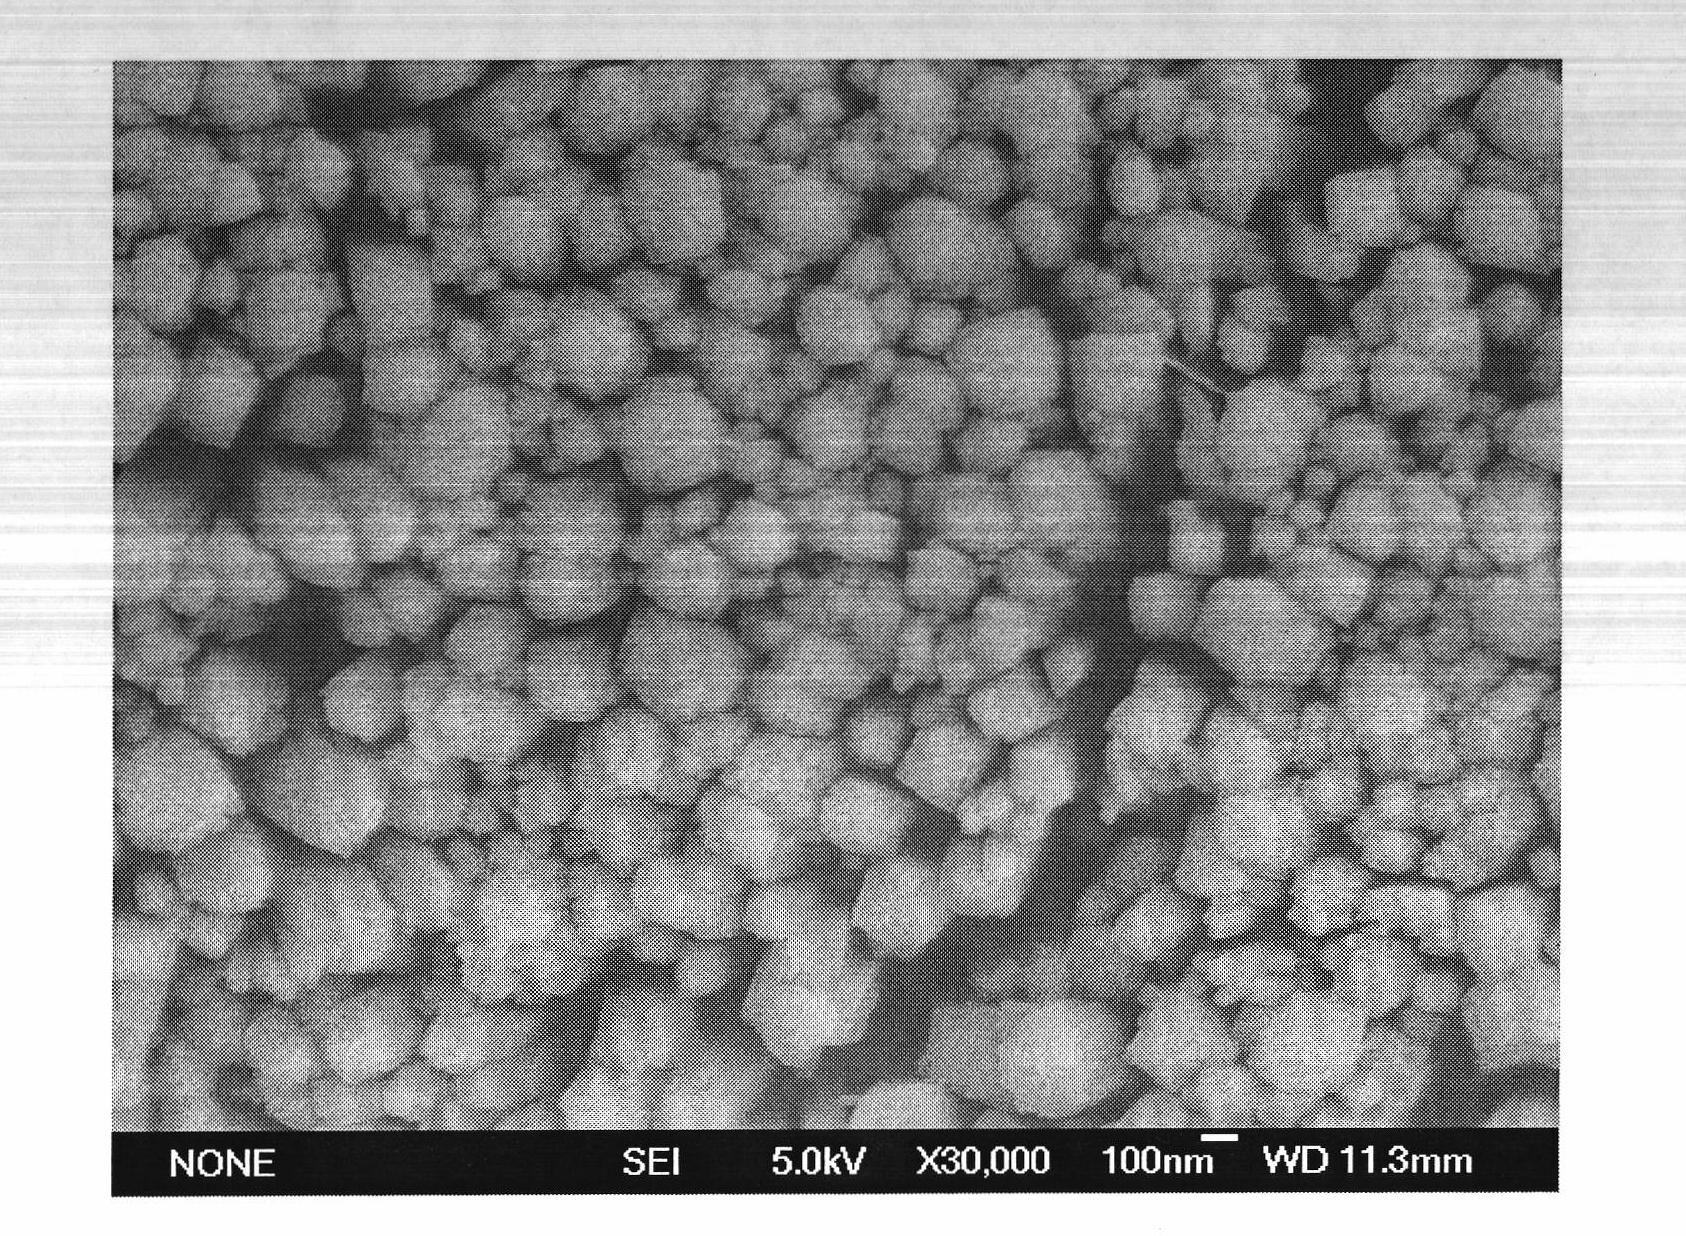 Preparation method of graphite phase carbon nitride/rutile monocrystal titanium dioxide (TiO2) nanowire array